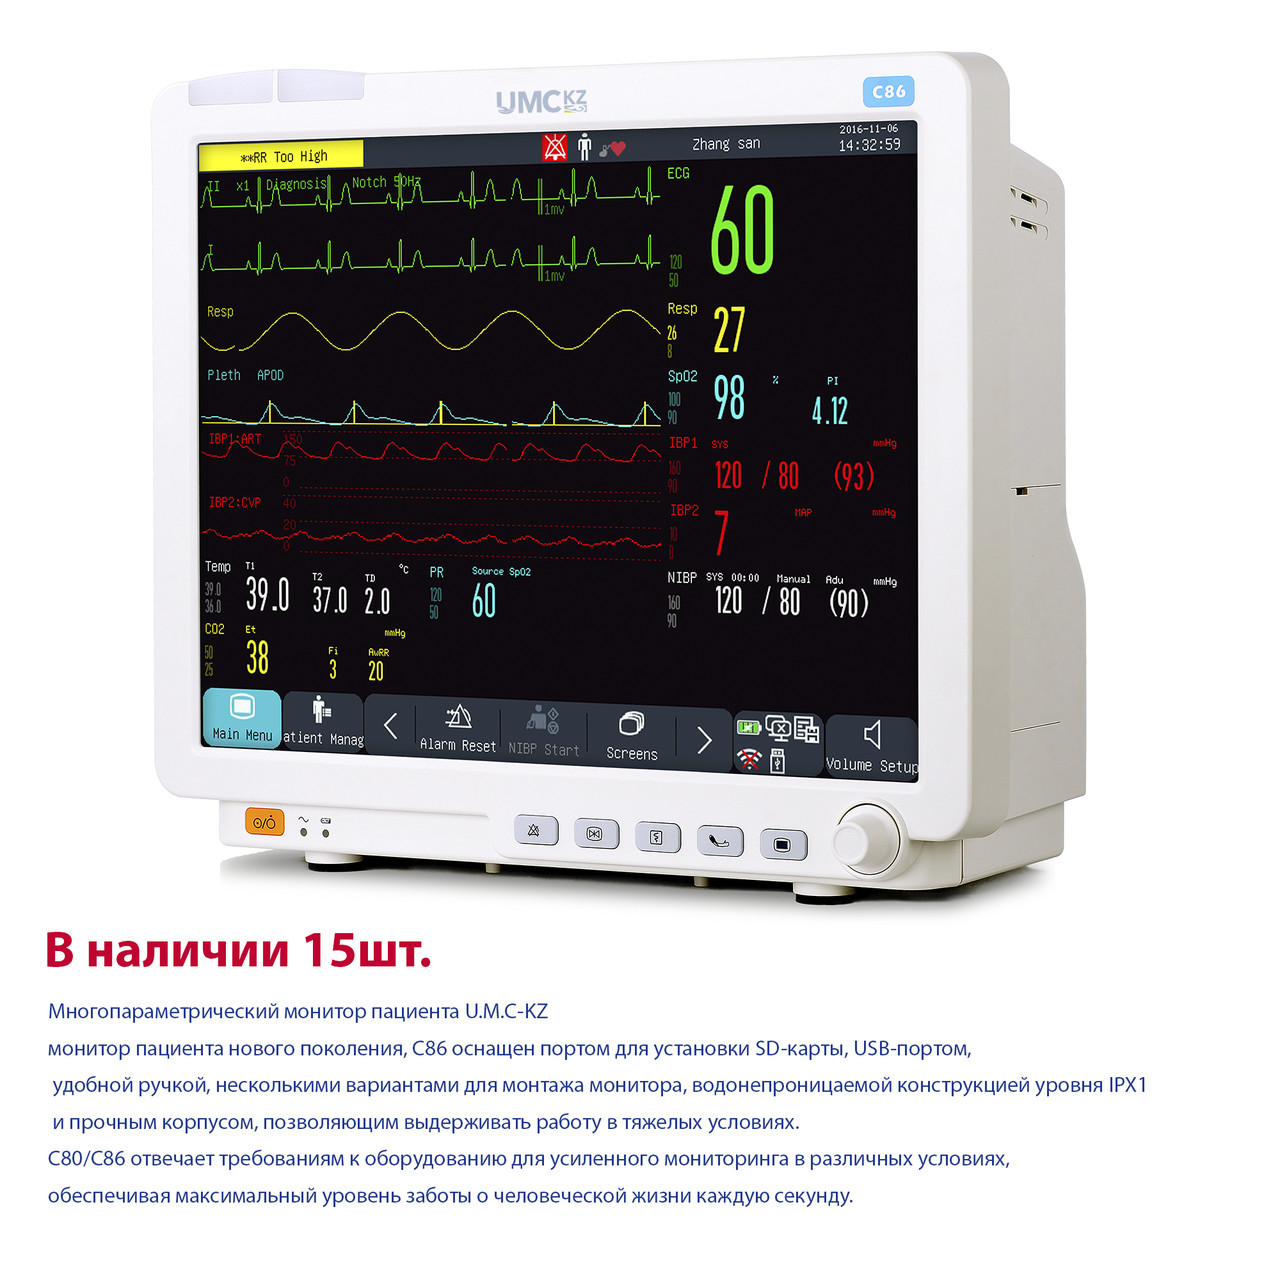 Прикроватные мониторы пациента для всех отделений больницы к модульного монитора модель C86